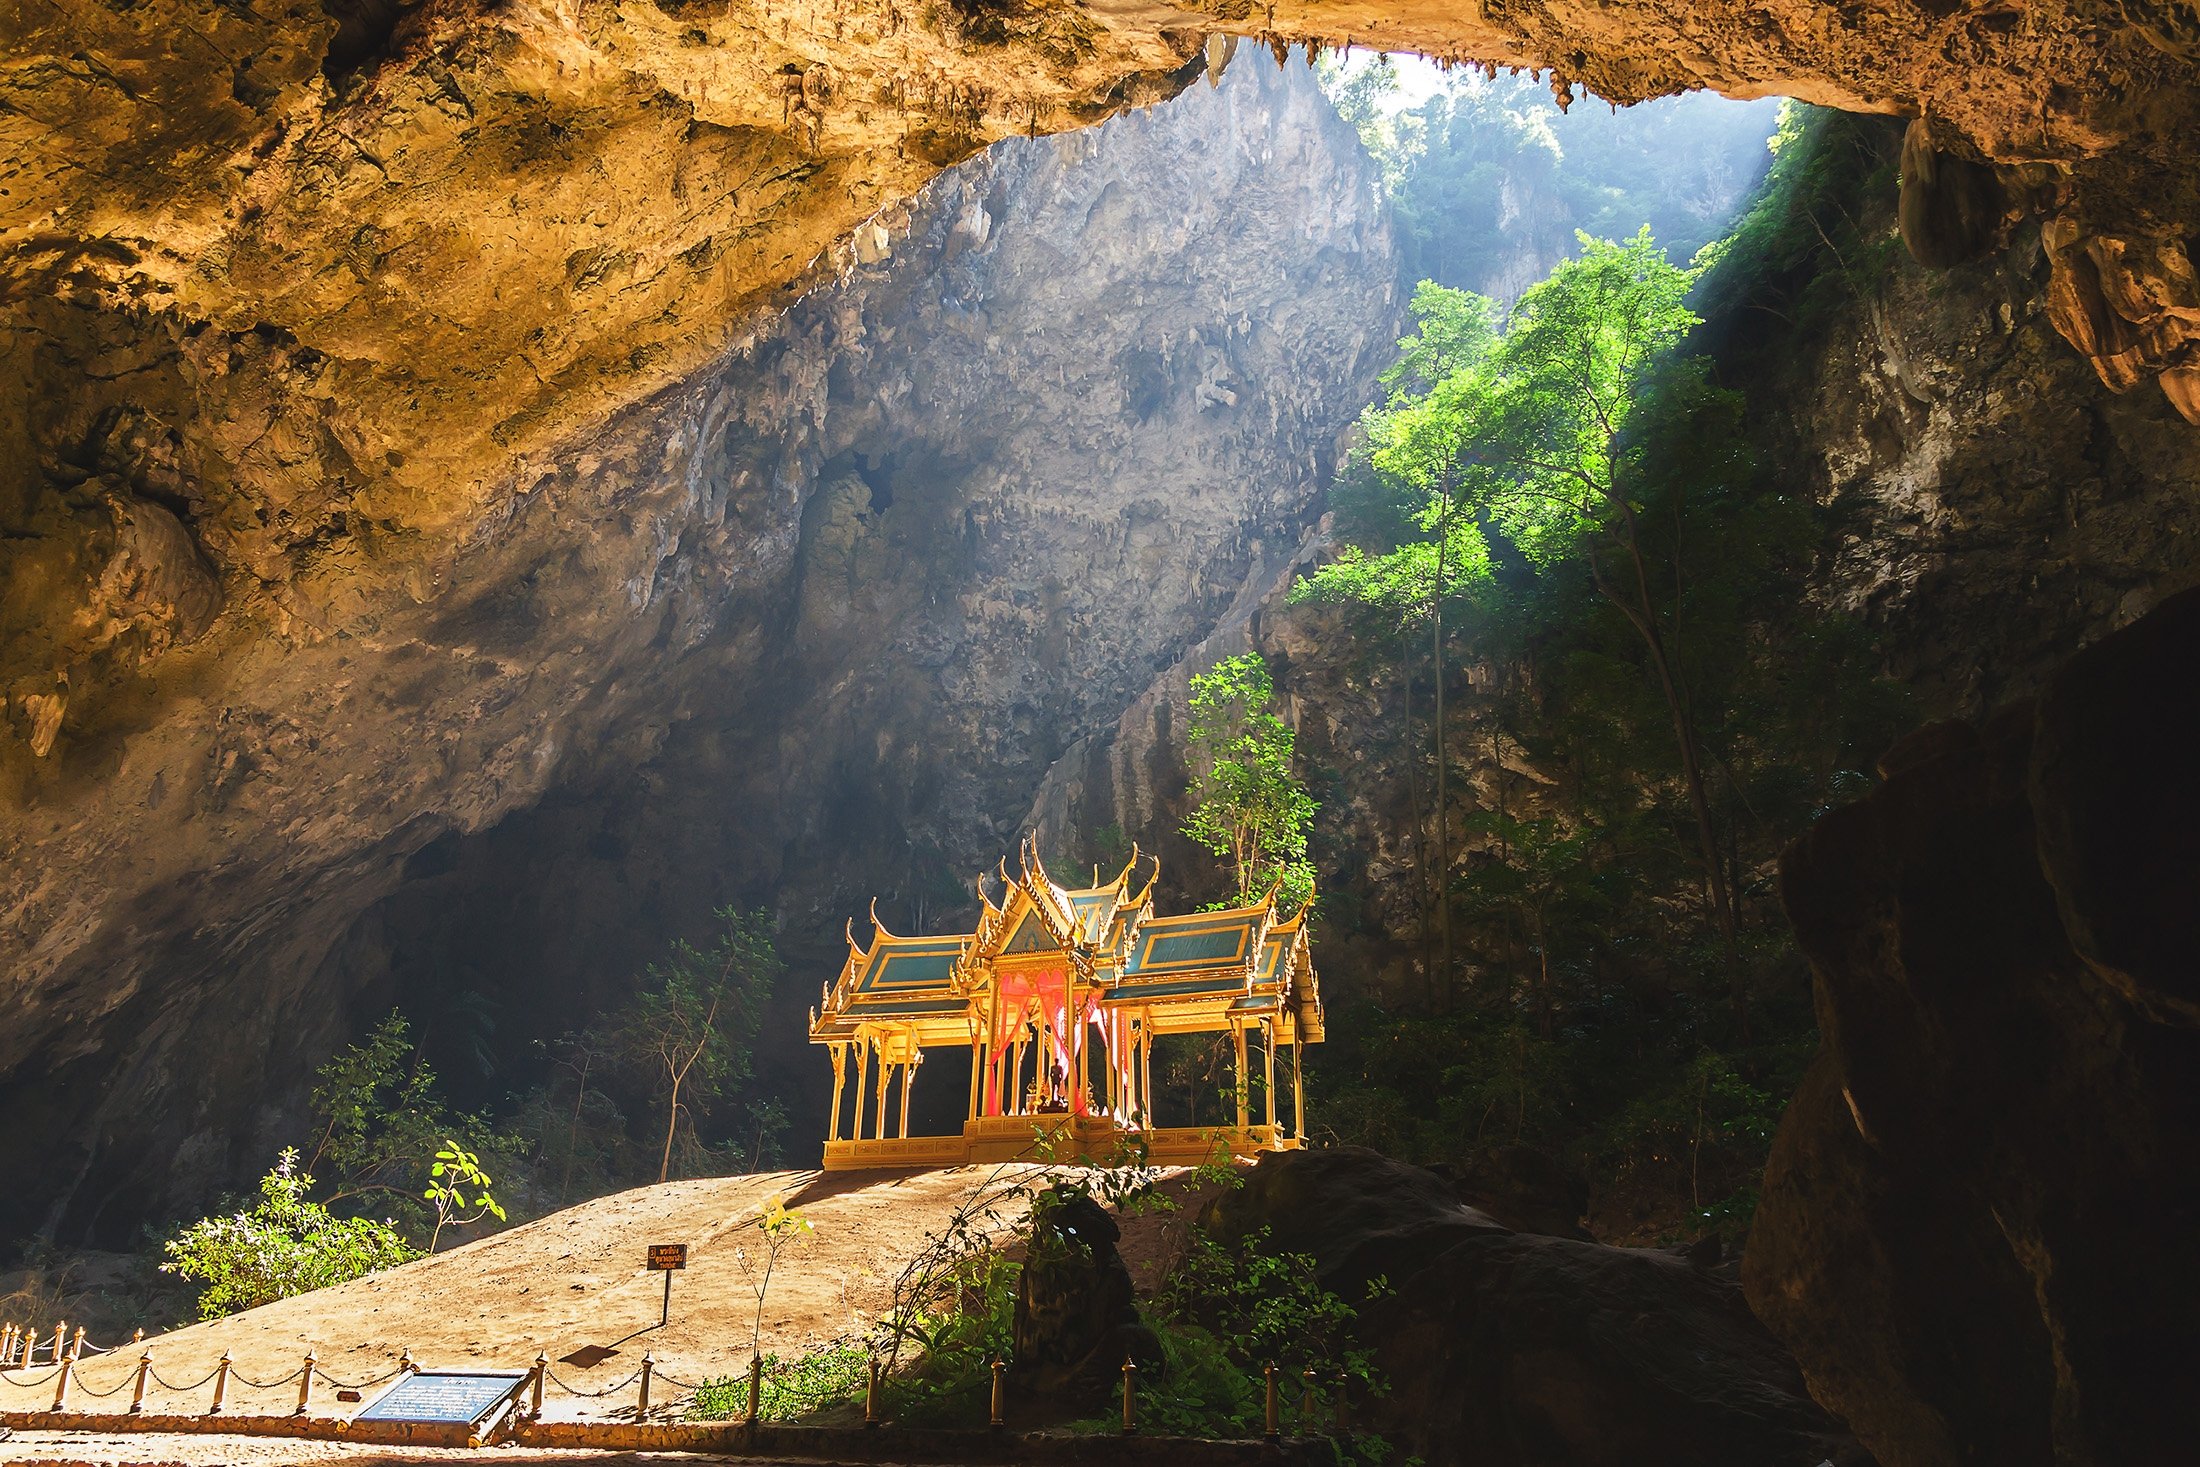 Phraya Nakhon di Thailand adalah sebuah gua besar dengan lubang di langit-langit yang memungkinkan sinar matahari masuk, yang terkadang menyinari langsung sebuah paviliun di jantung gua.  (Foto Shutterstock)